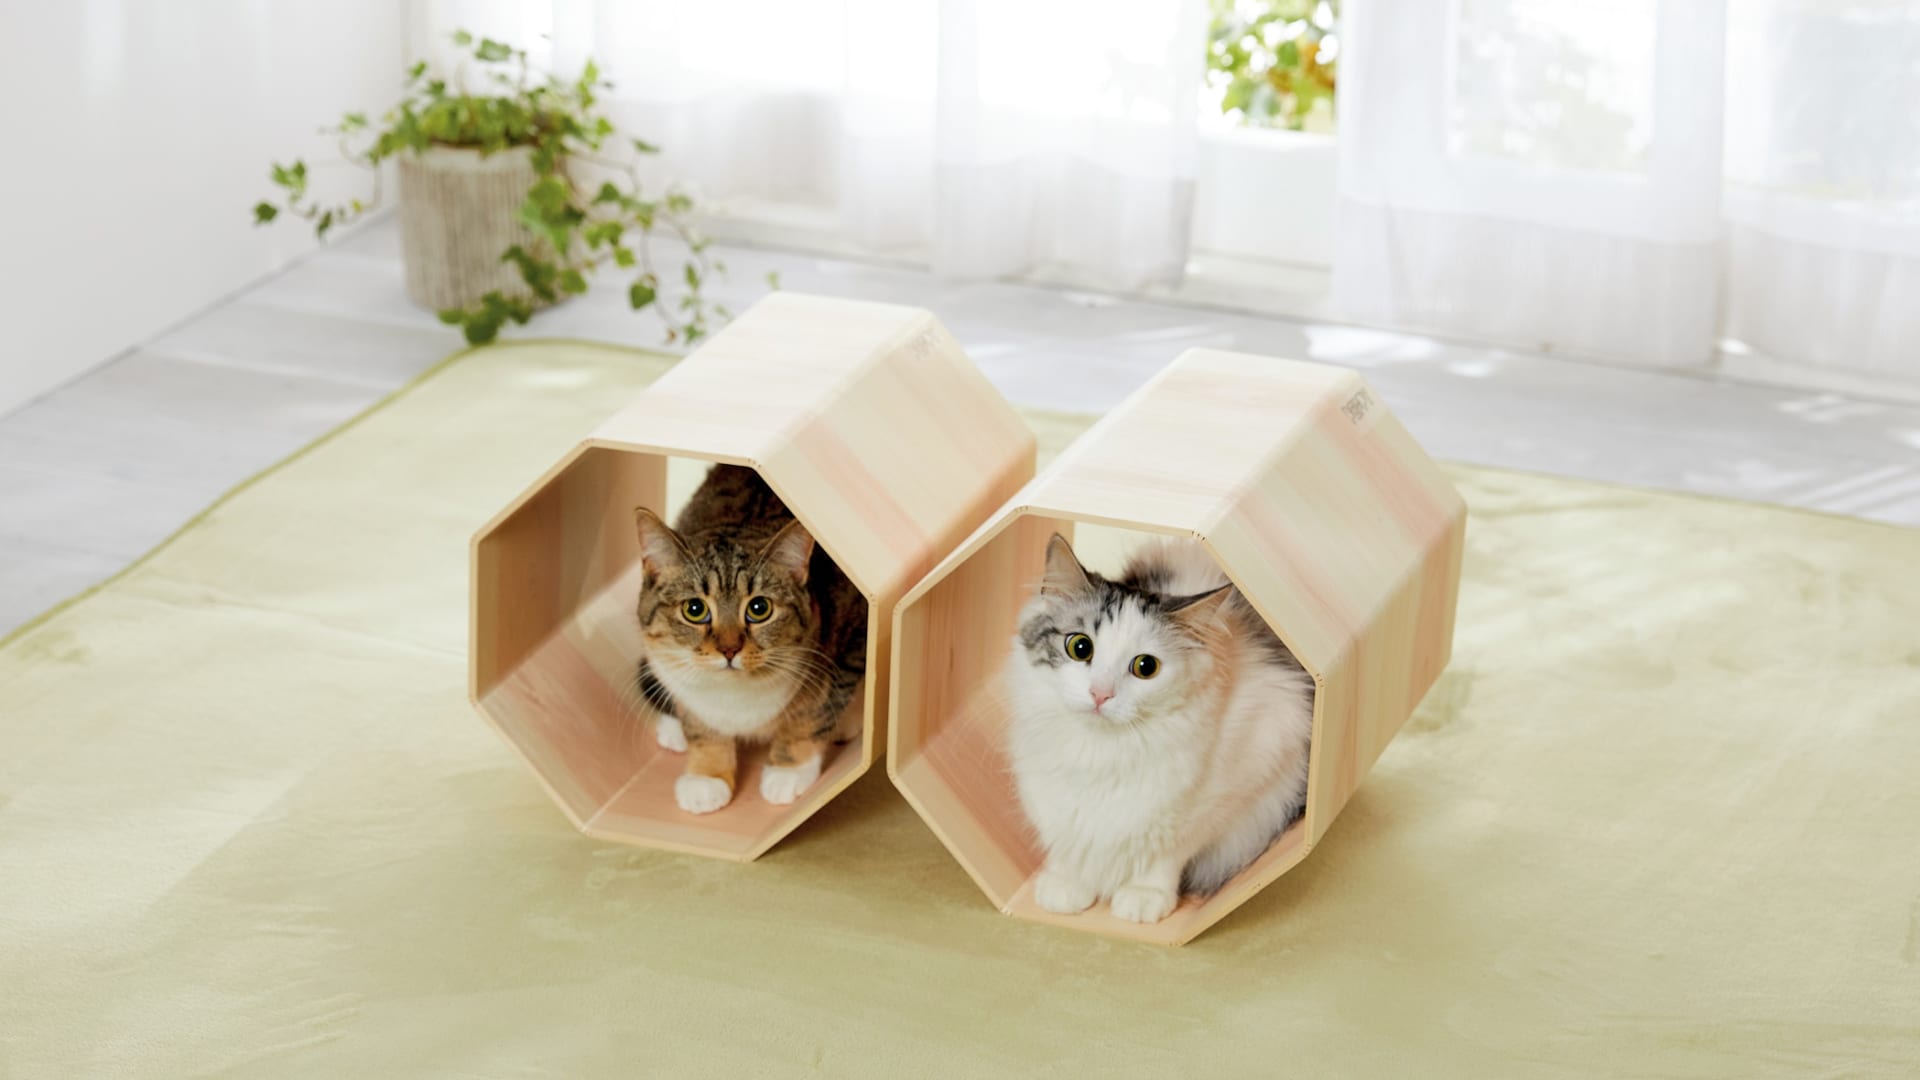 日本の伝統技術「挽曲げ」でつくった 「吉野桧」「龍神杉」の猫専用ベッド | Webマガジン「AXIS」 | デザインのWebメディア